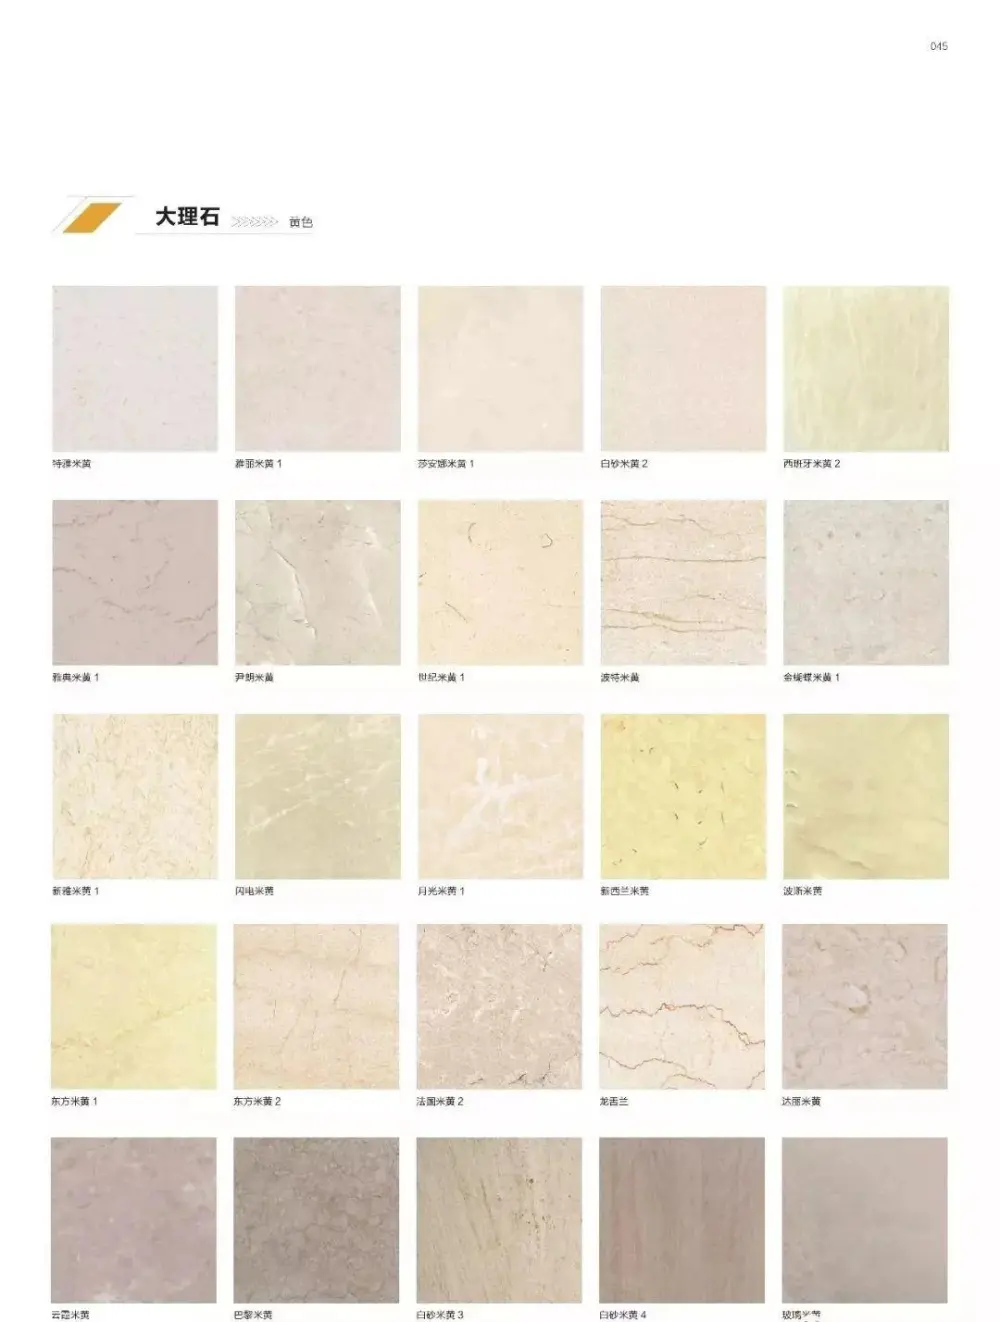 石材应用手册丨石材铺贴方法丨石材图库案例丨PDF版+JPG高清丨980M